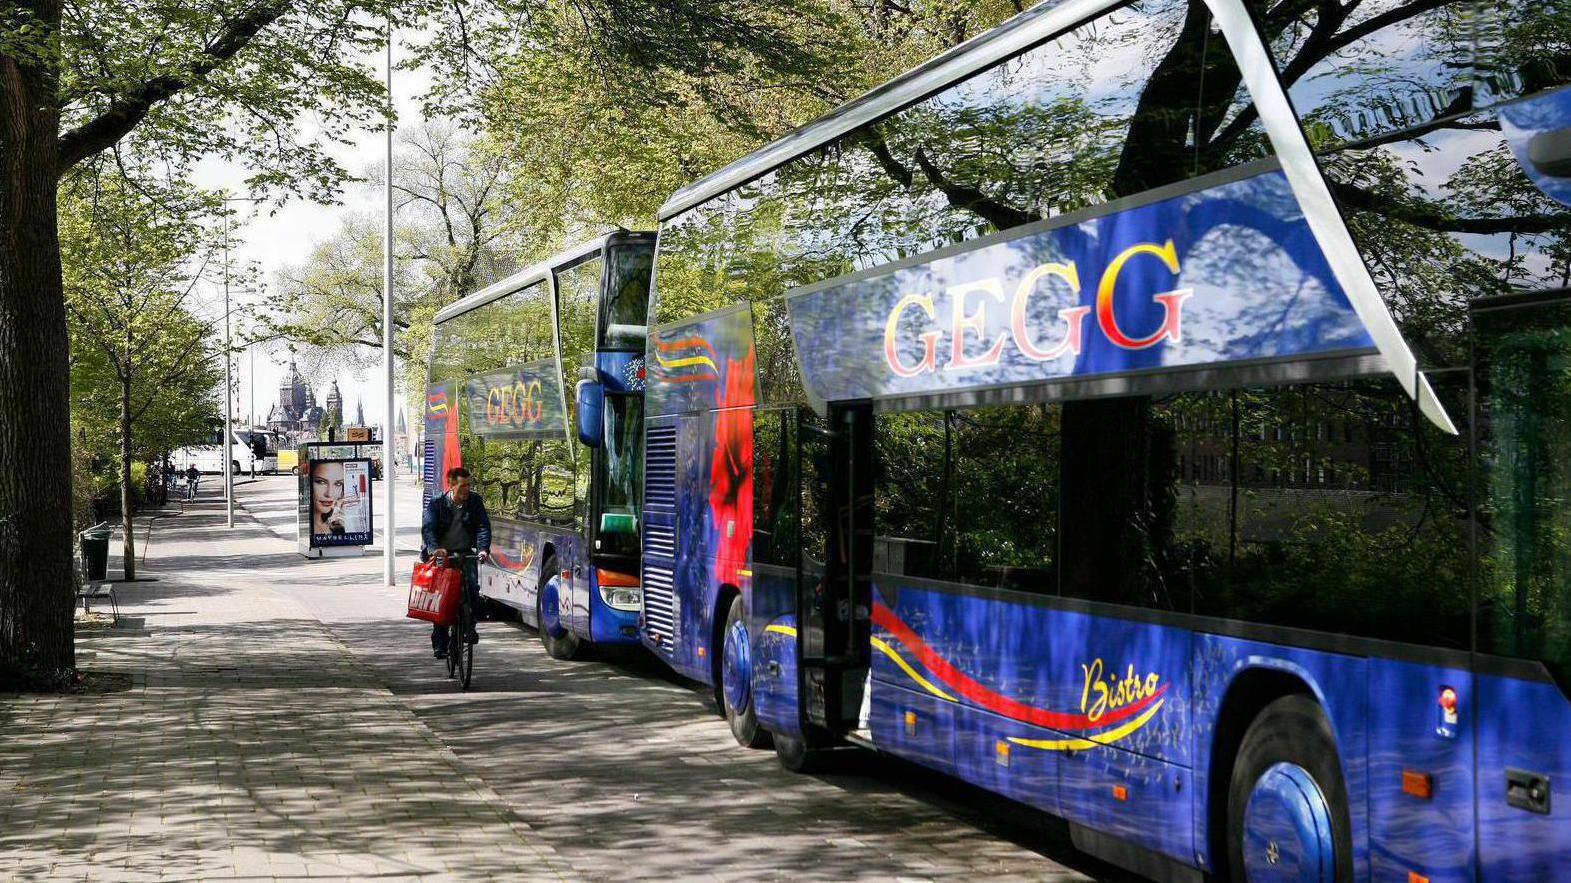 Nieuwe hop-on hop-off bus biedt rondje stad over binnenring